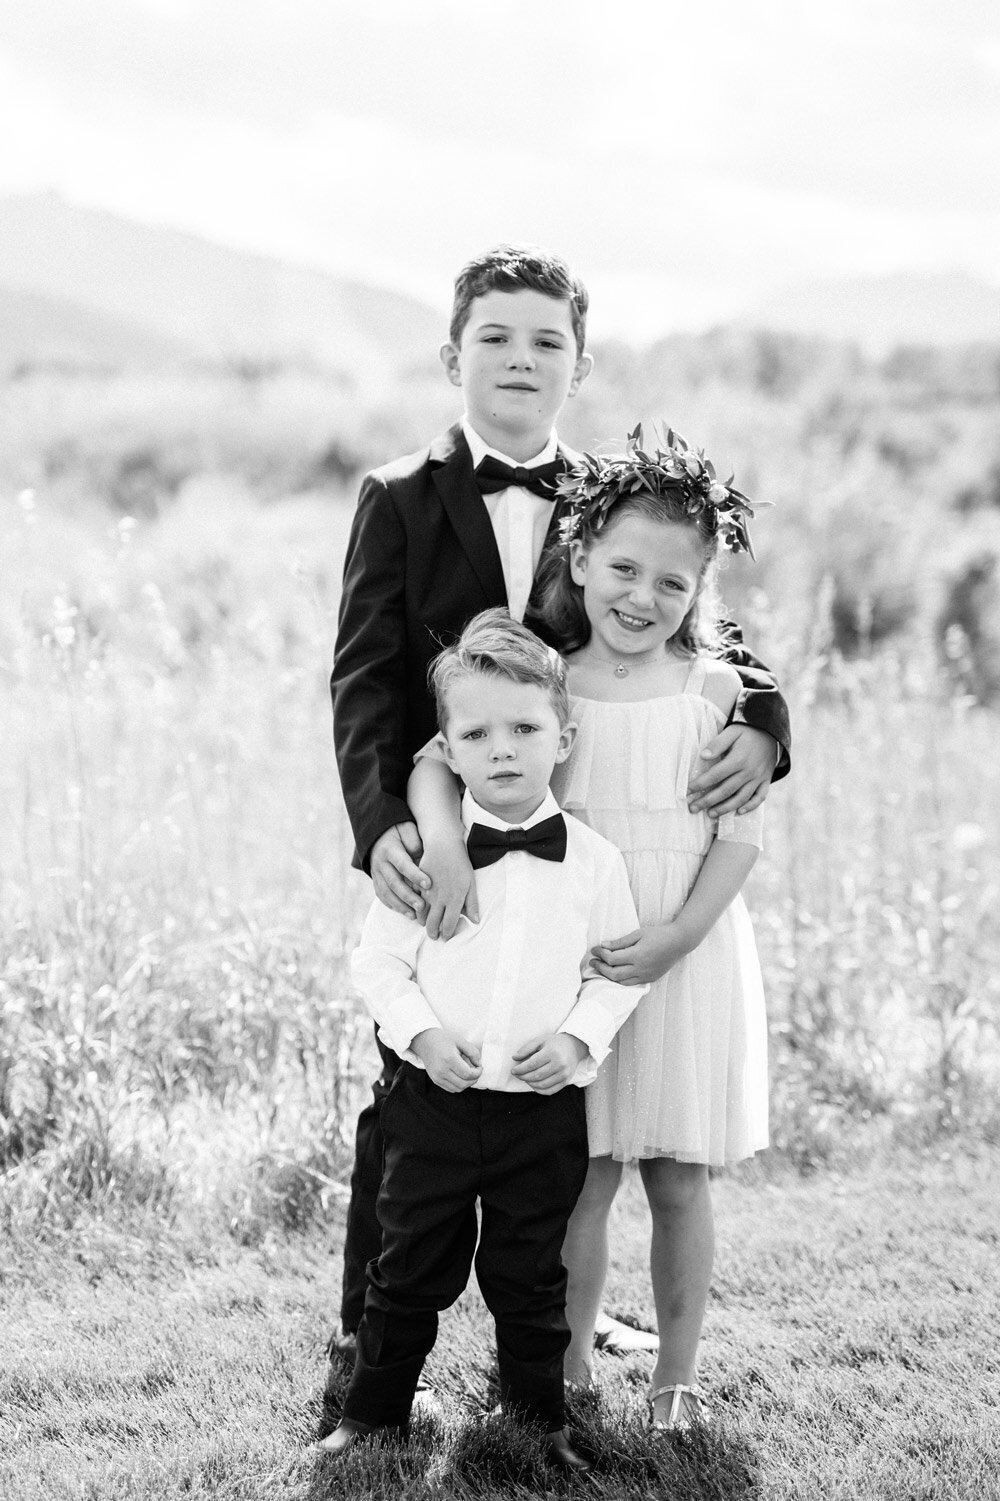 Kids at an outdoor Colorado wedding